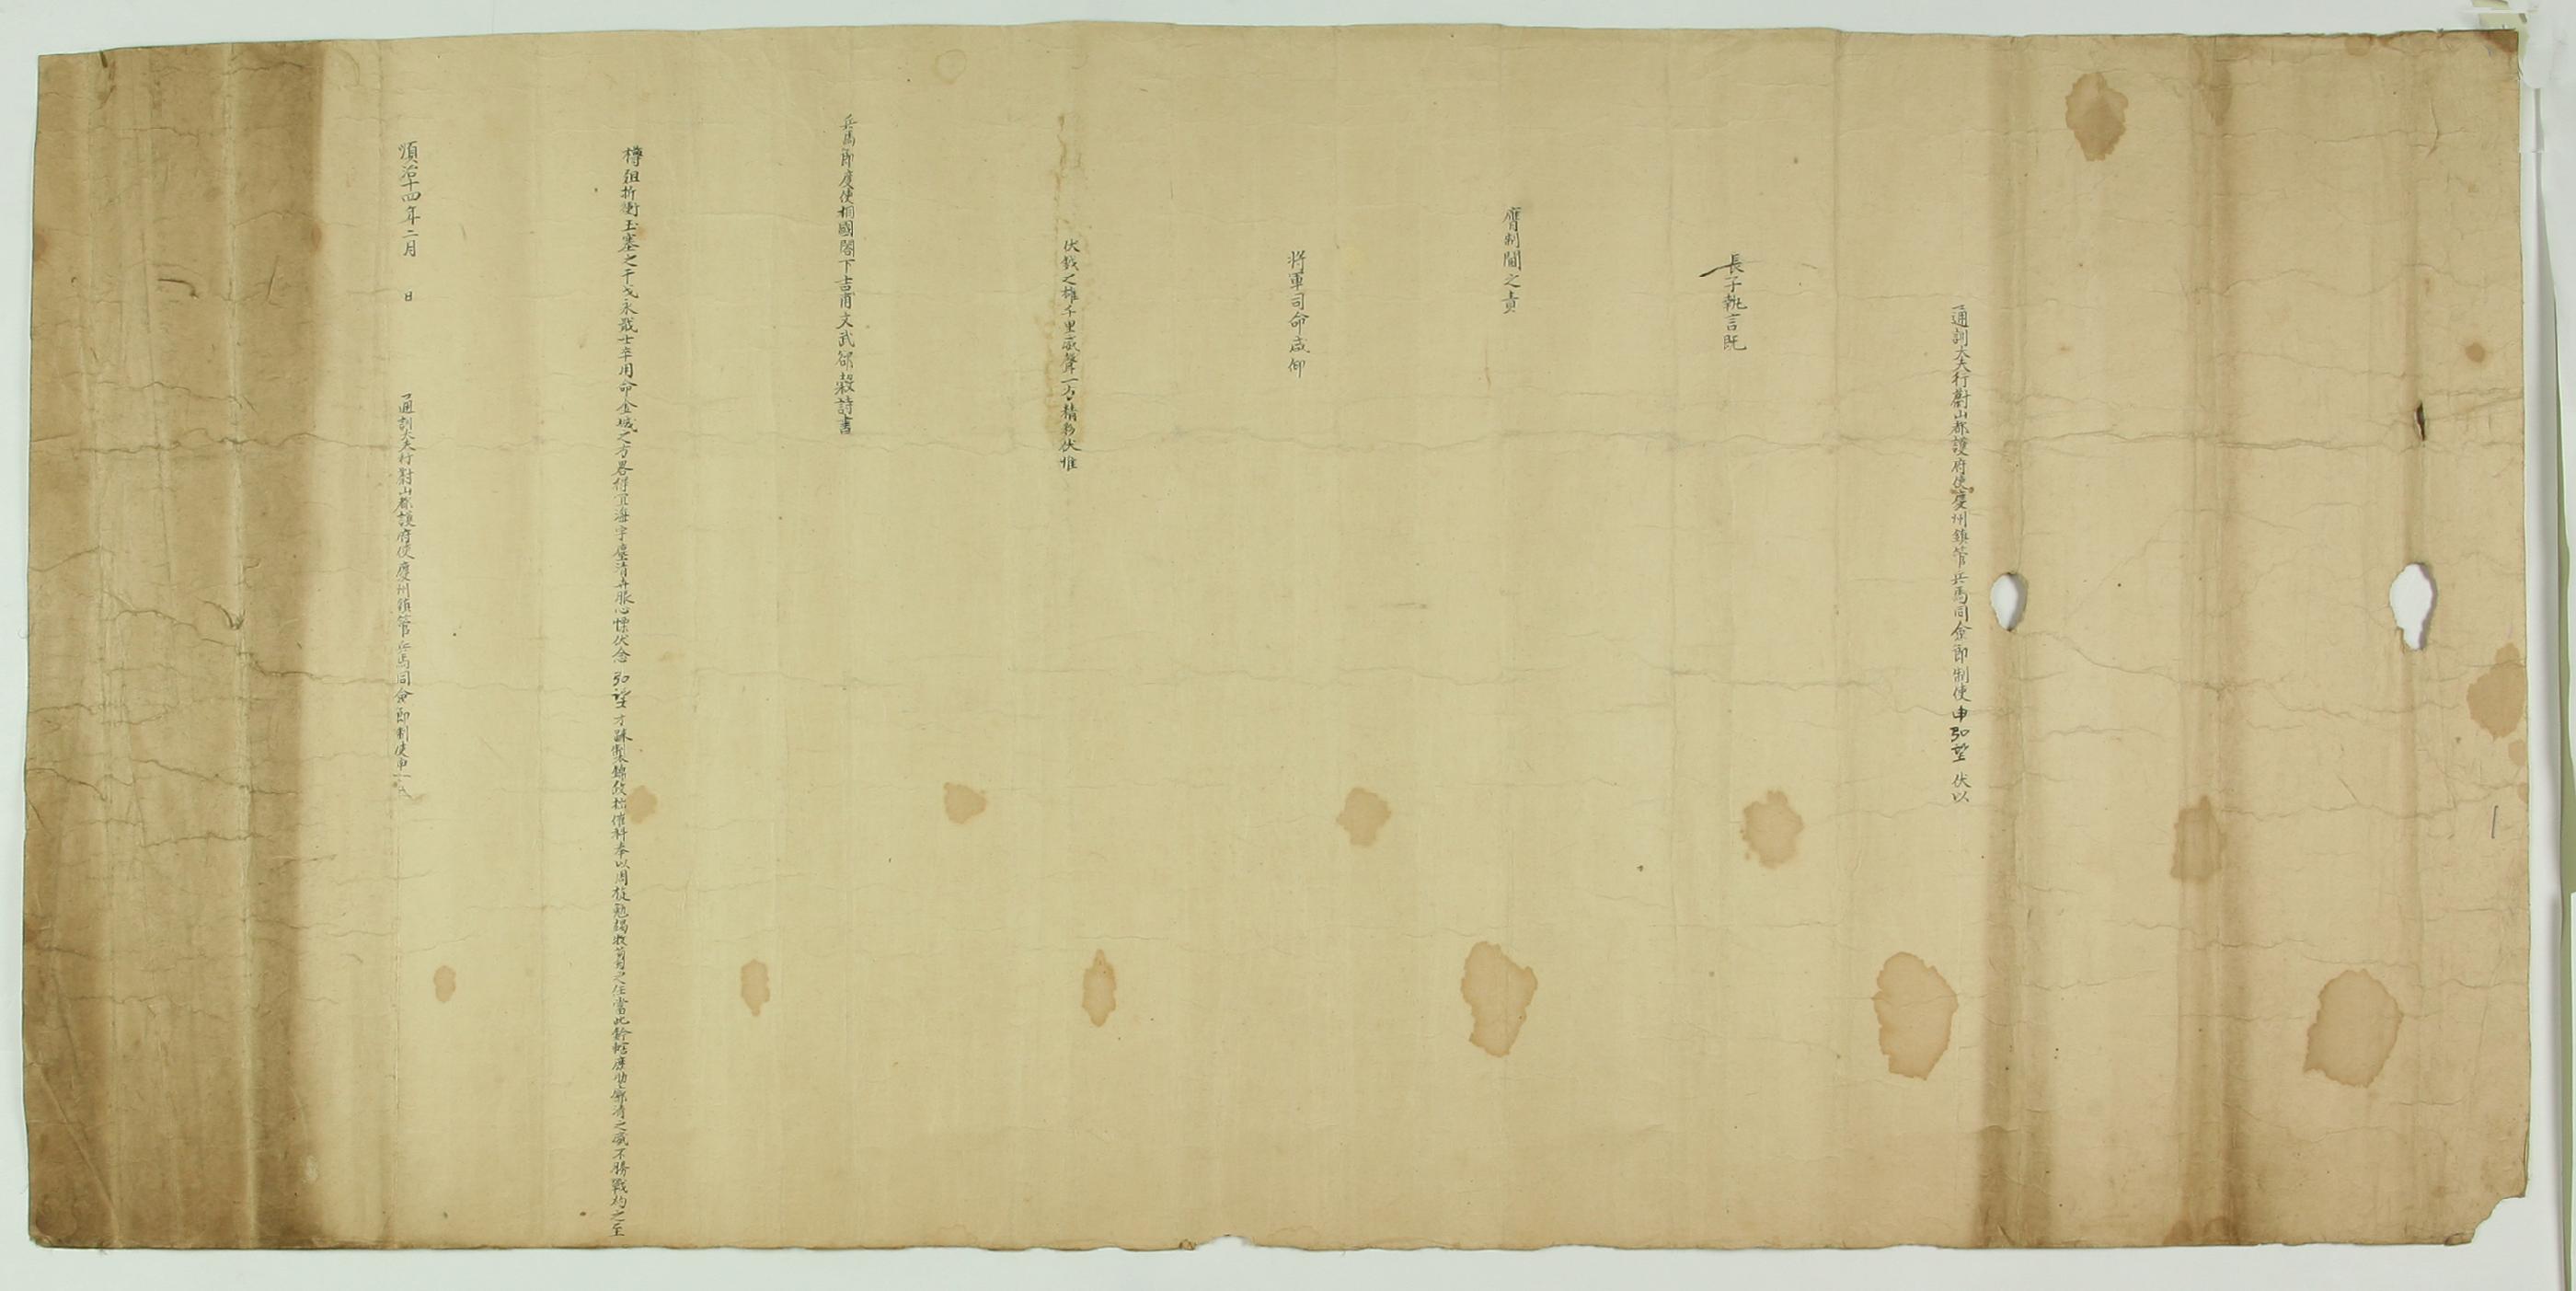 신홍망(申弘望)이 1657년에 관직을 제수받고 자신의 심경을 적어 보낸 글